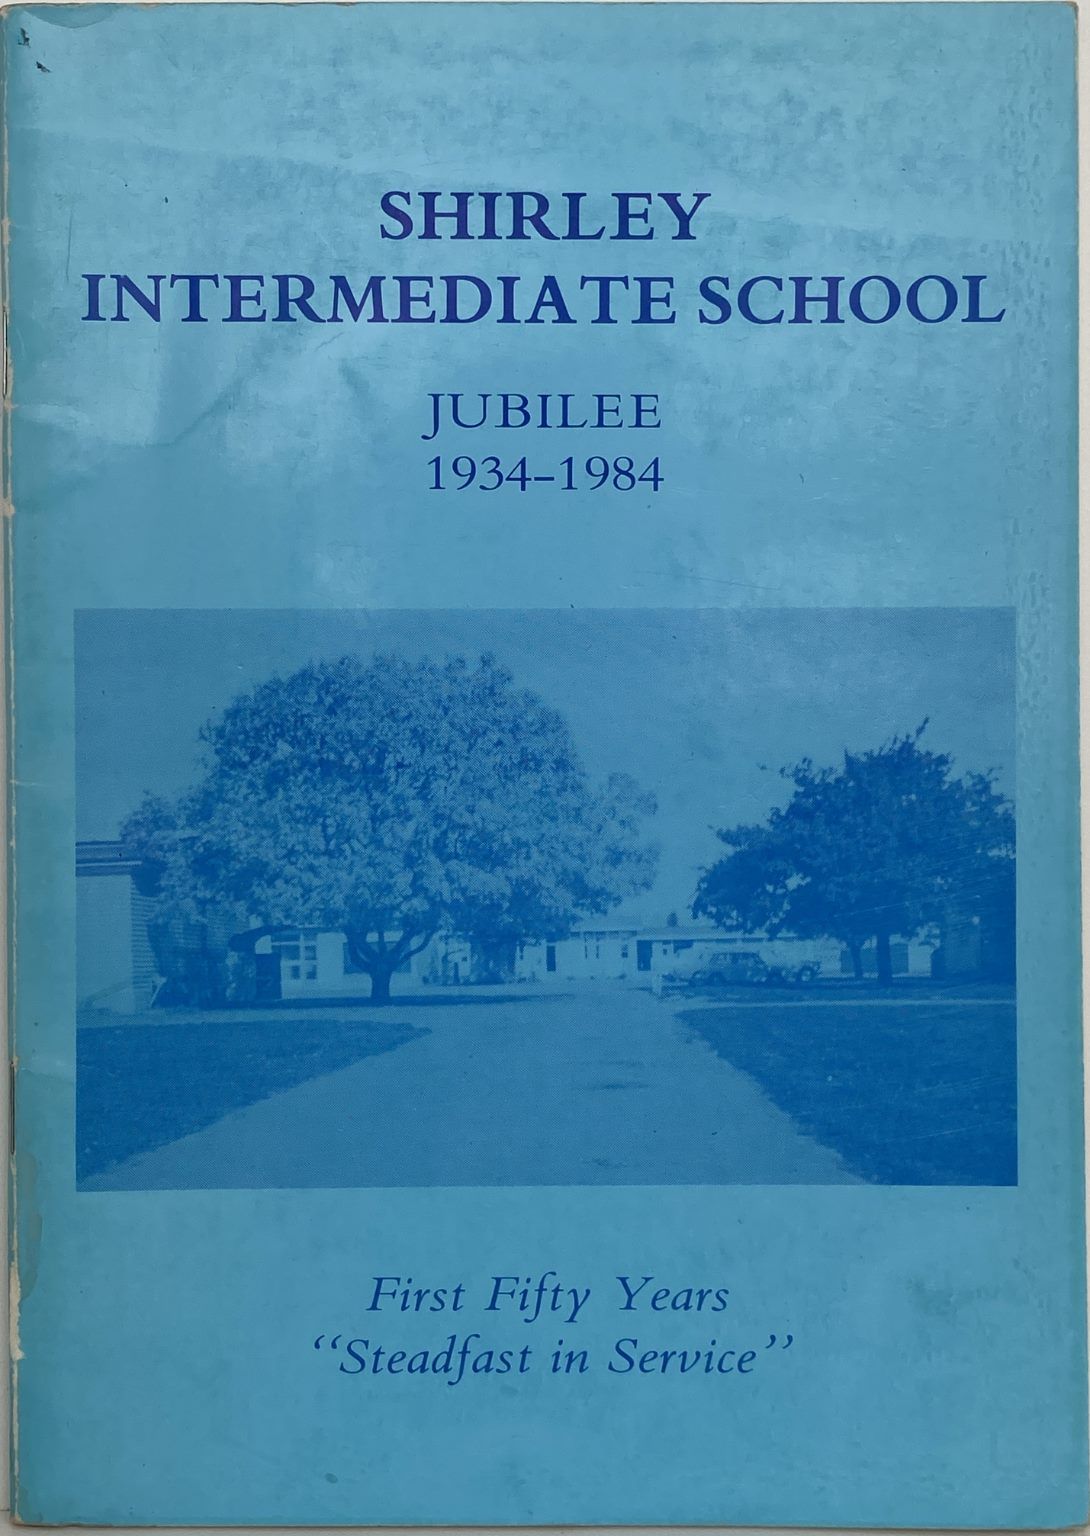 SHIRLEY INTERMEDIATE SCHOOL: Jubilee 1934 - 1984